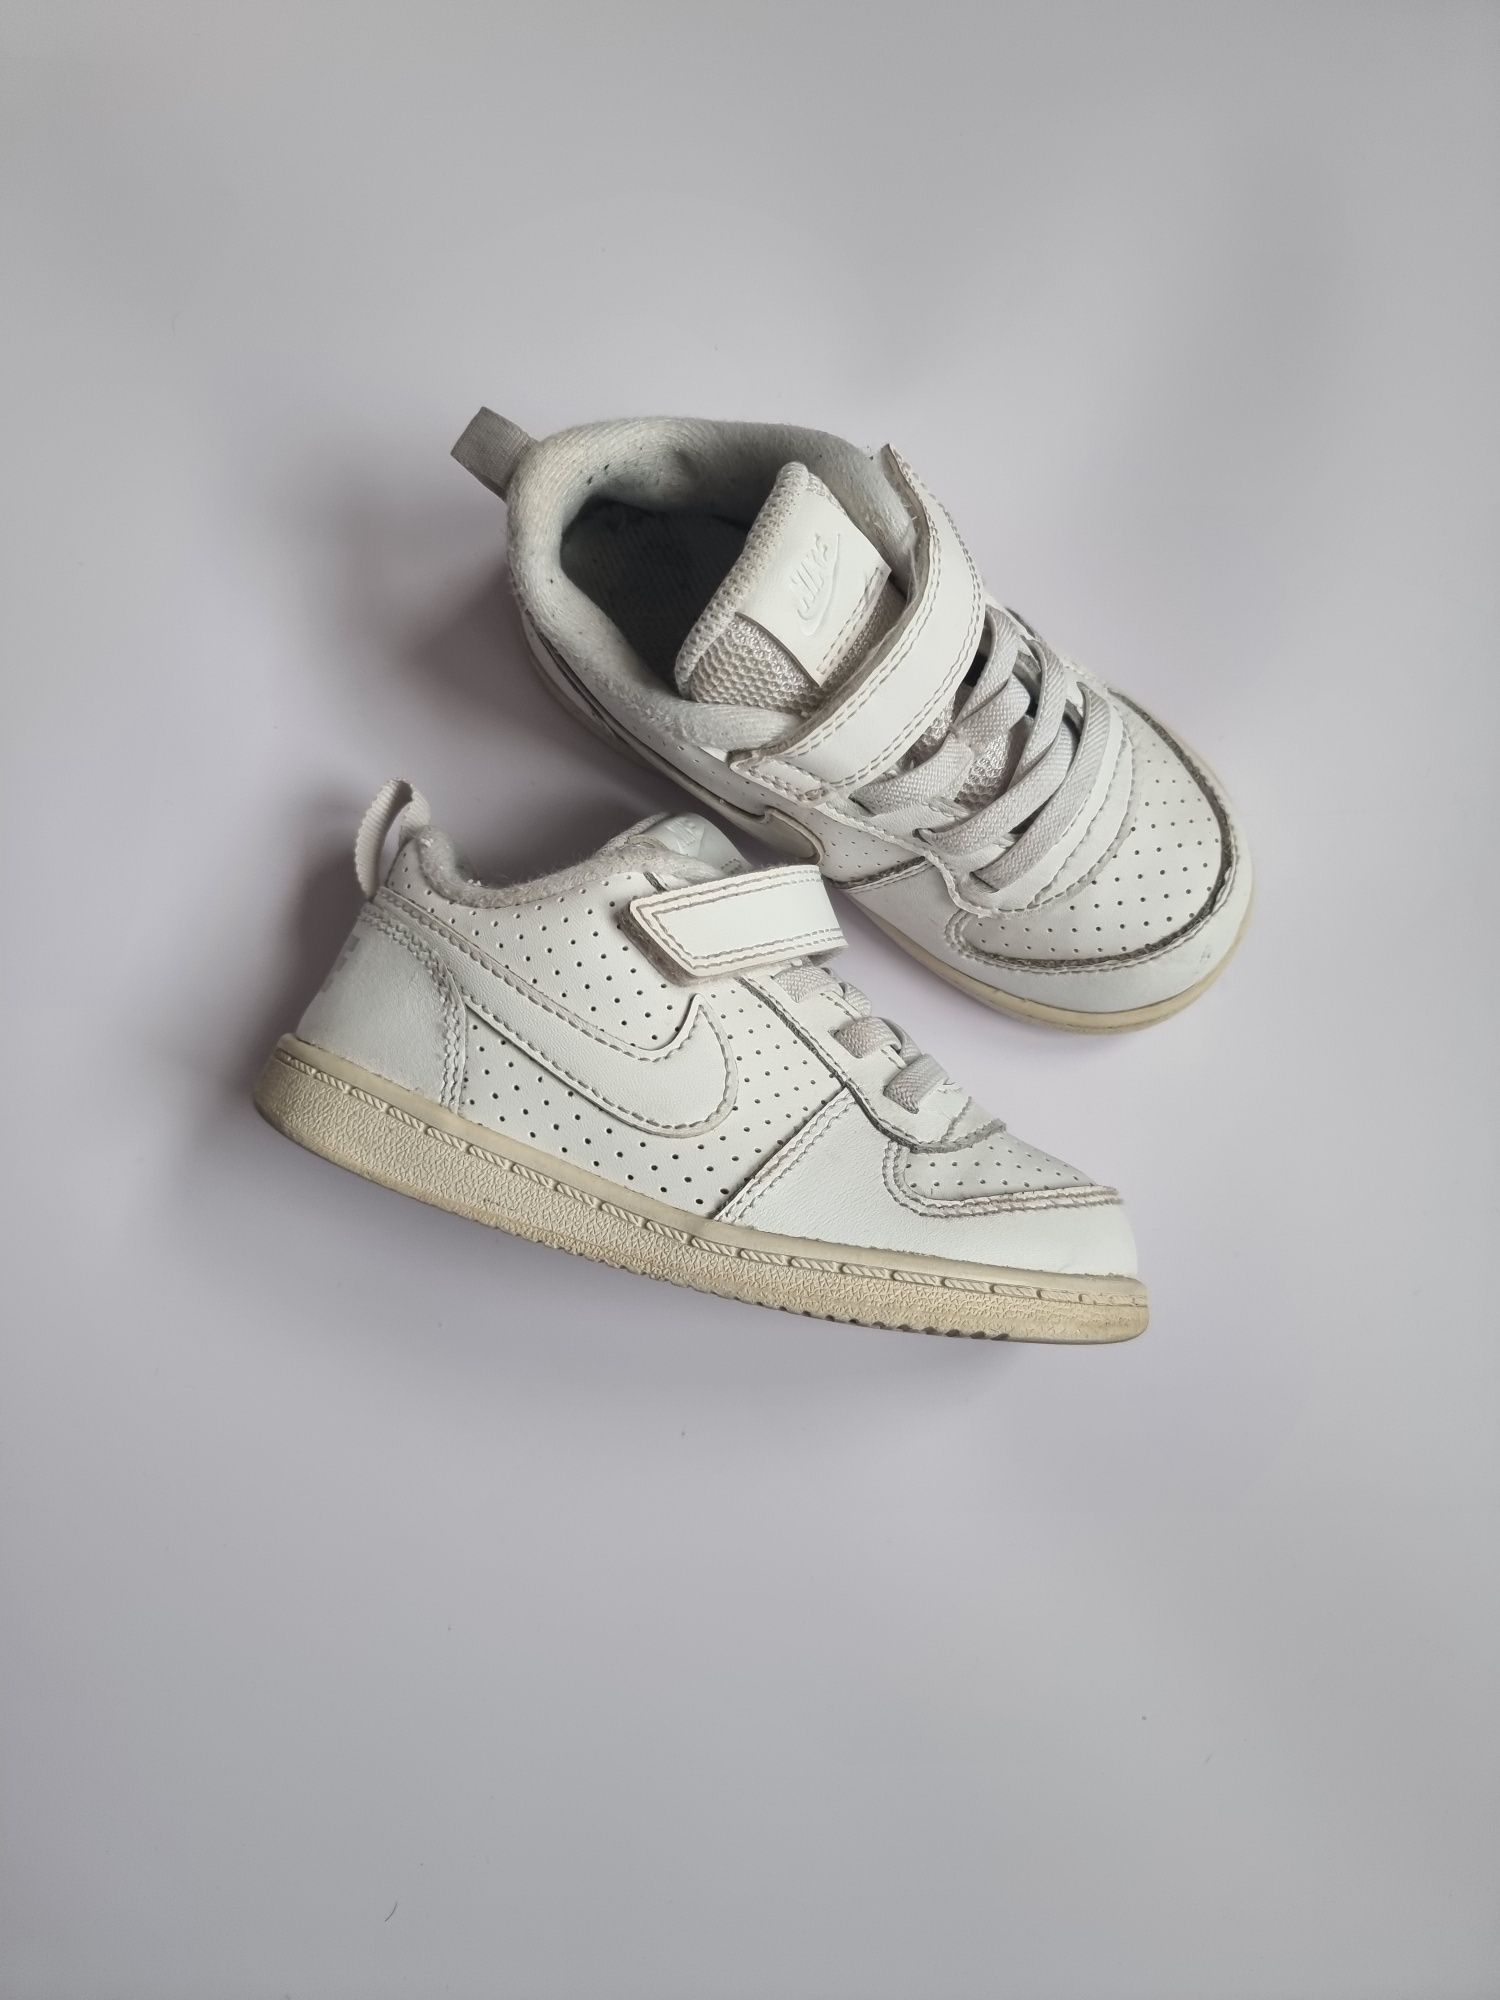 Buty adidasy białe Nike zapinane na rzepy rozmiar 25 buty dziecięce